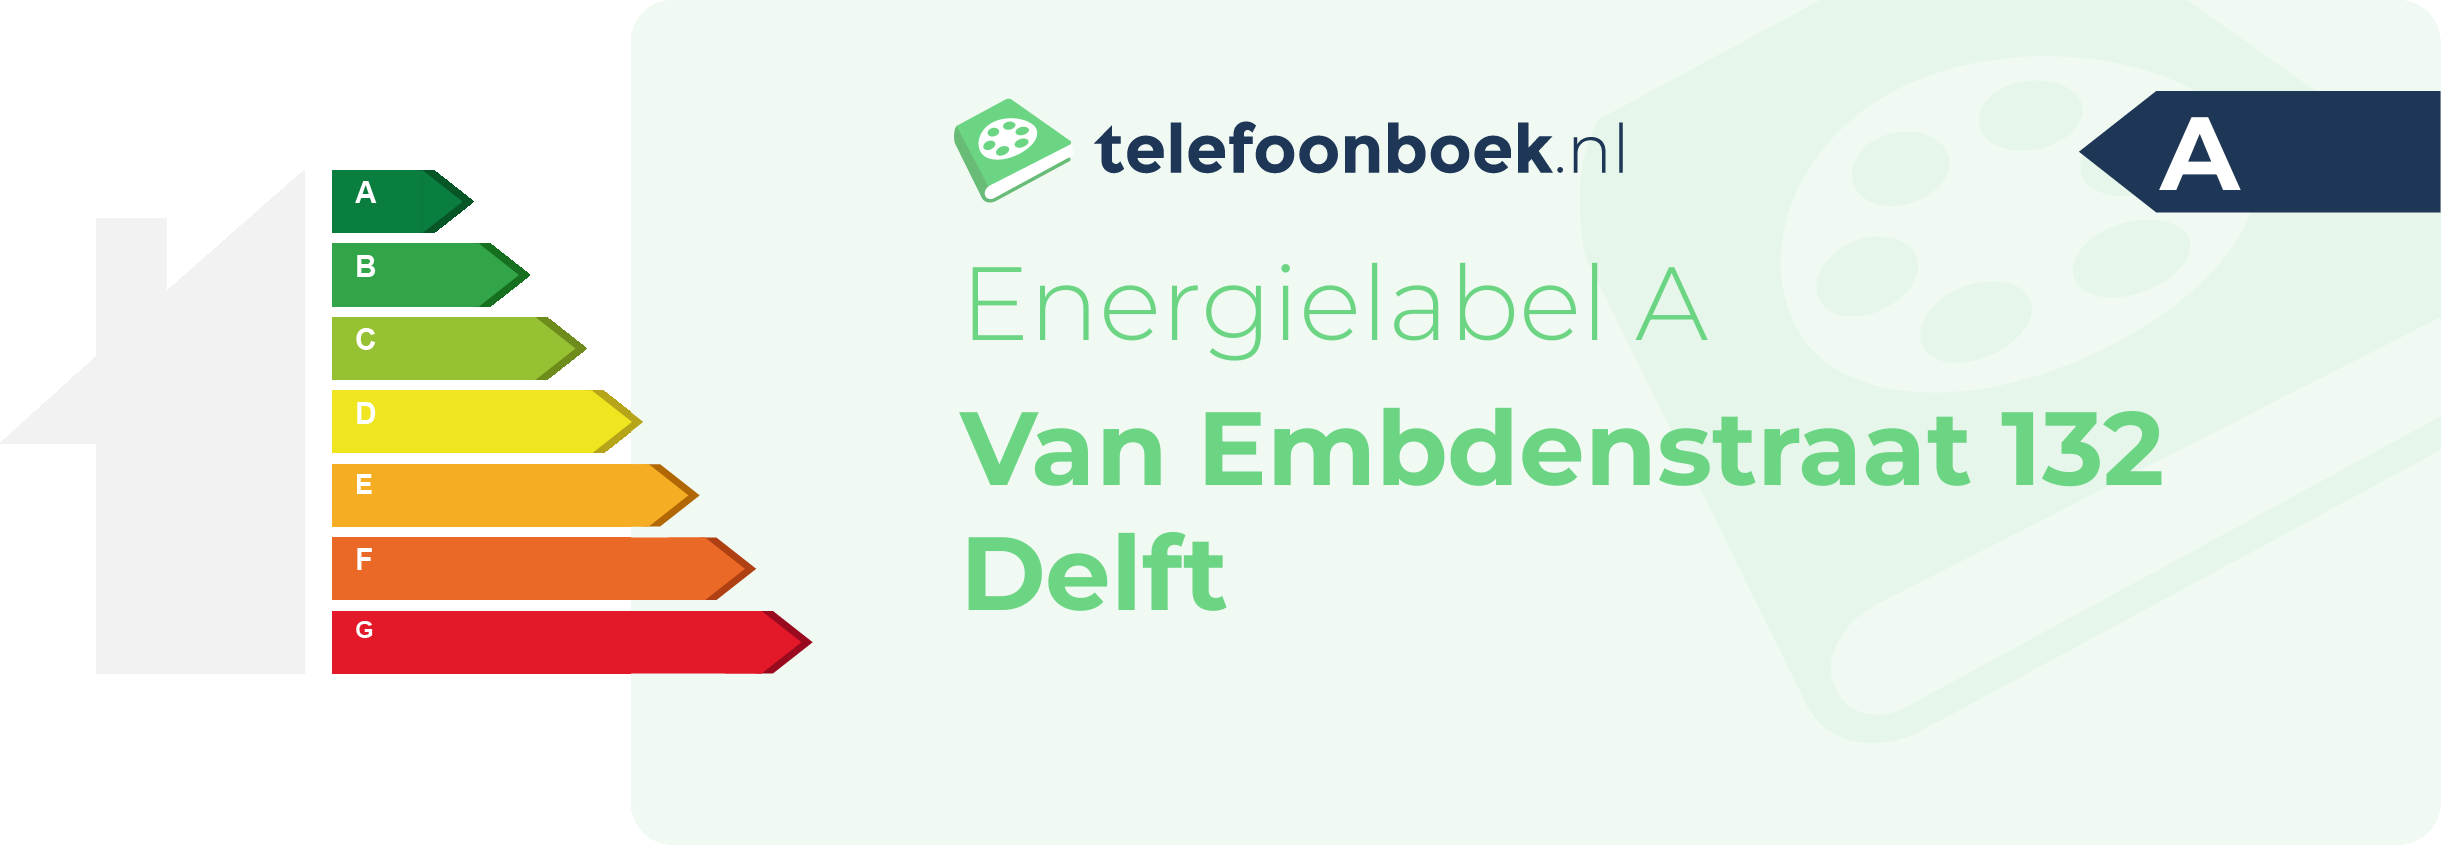 Energielabel Van Embdenstraat 132 Delft